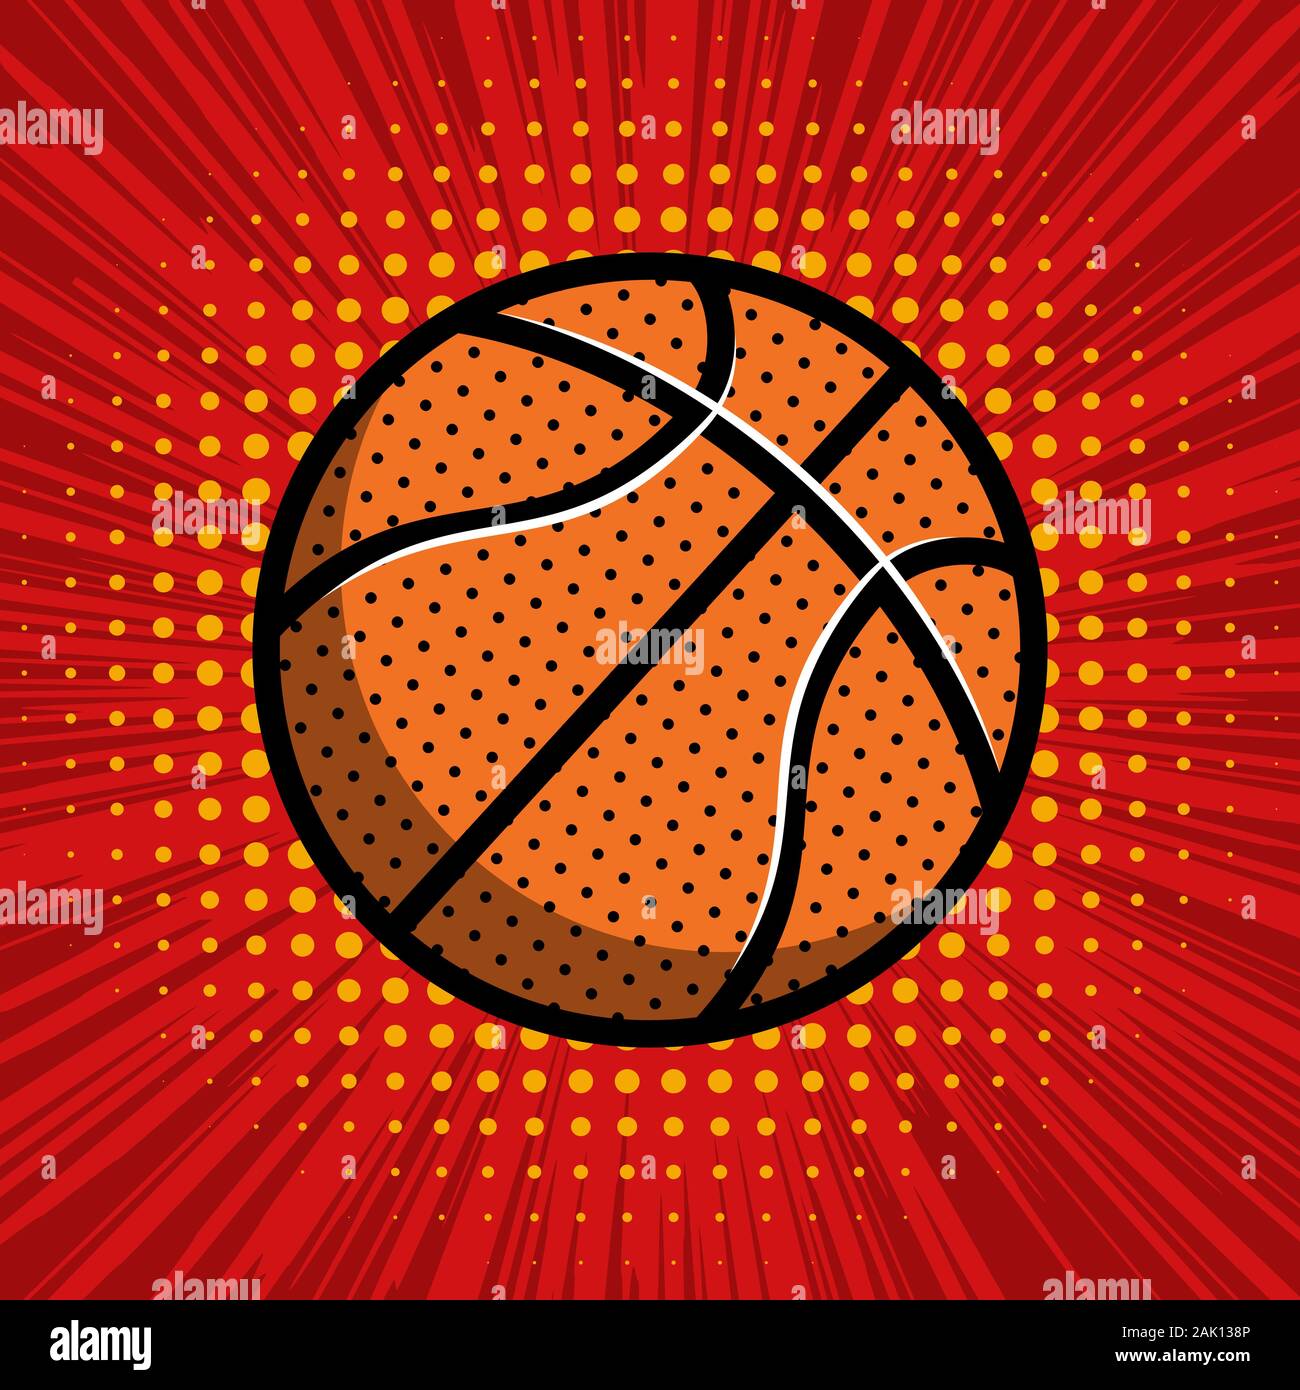 Basketball Ball auf Comic-stil Hintergrund. Design Element für Poster, Karten, Banner. Vector Illustration Stock Vektor